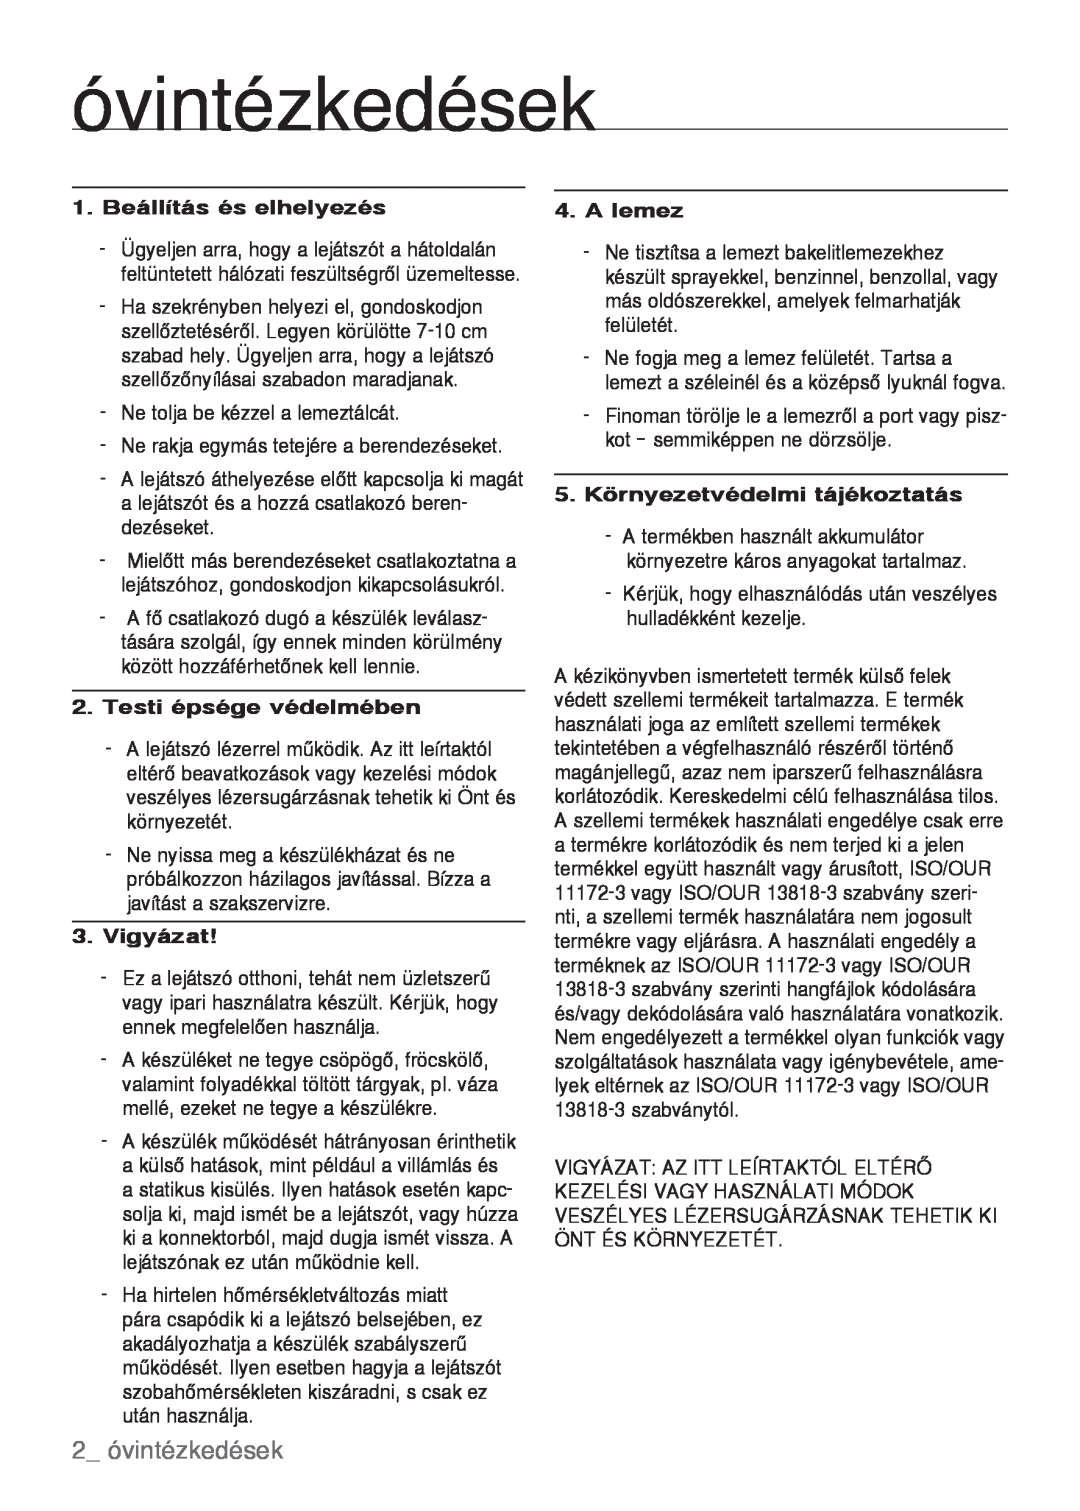 Samsung DVD-H1080/XET manual  óvintézkedések, 1. Beállítás és elhelyezés, A lemez, Testi épsége védelmében, Vigyázat 